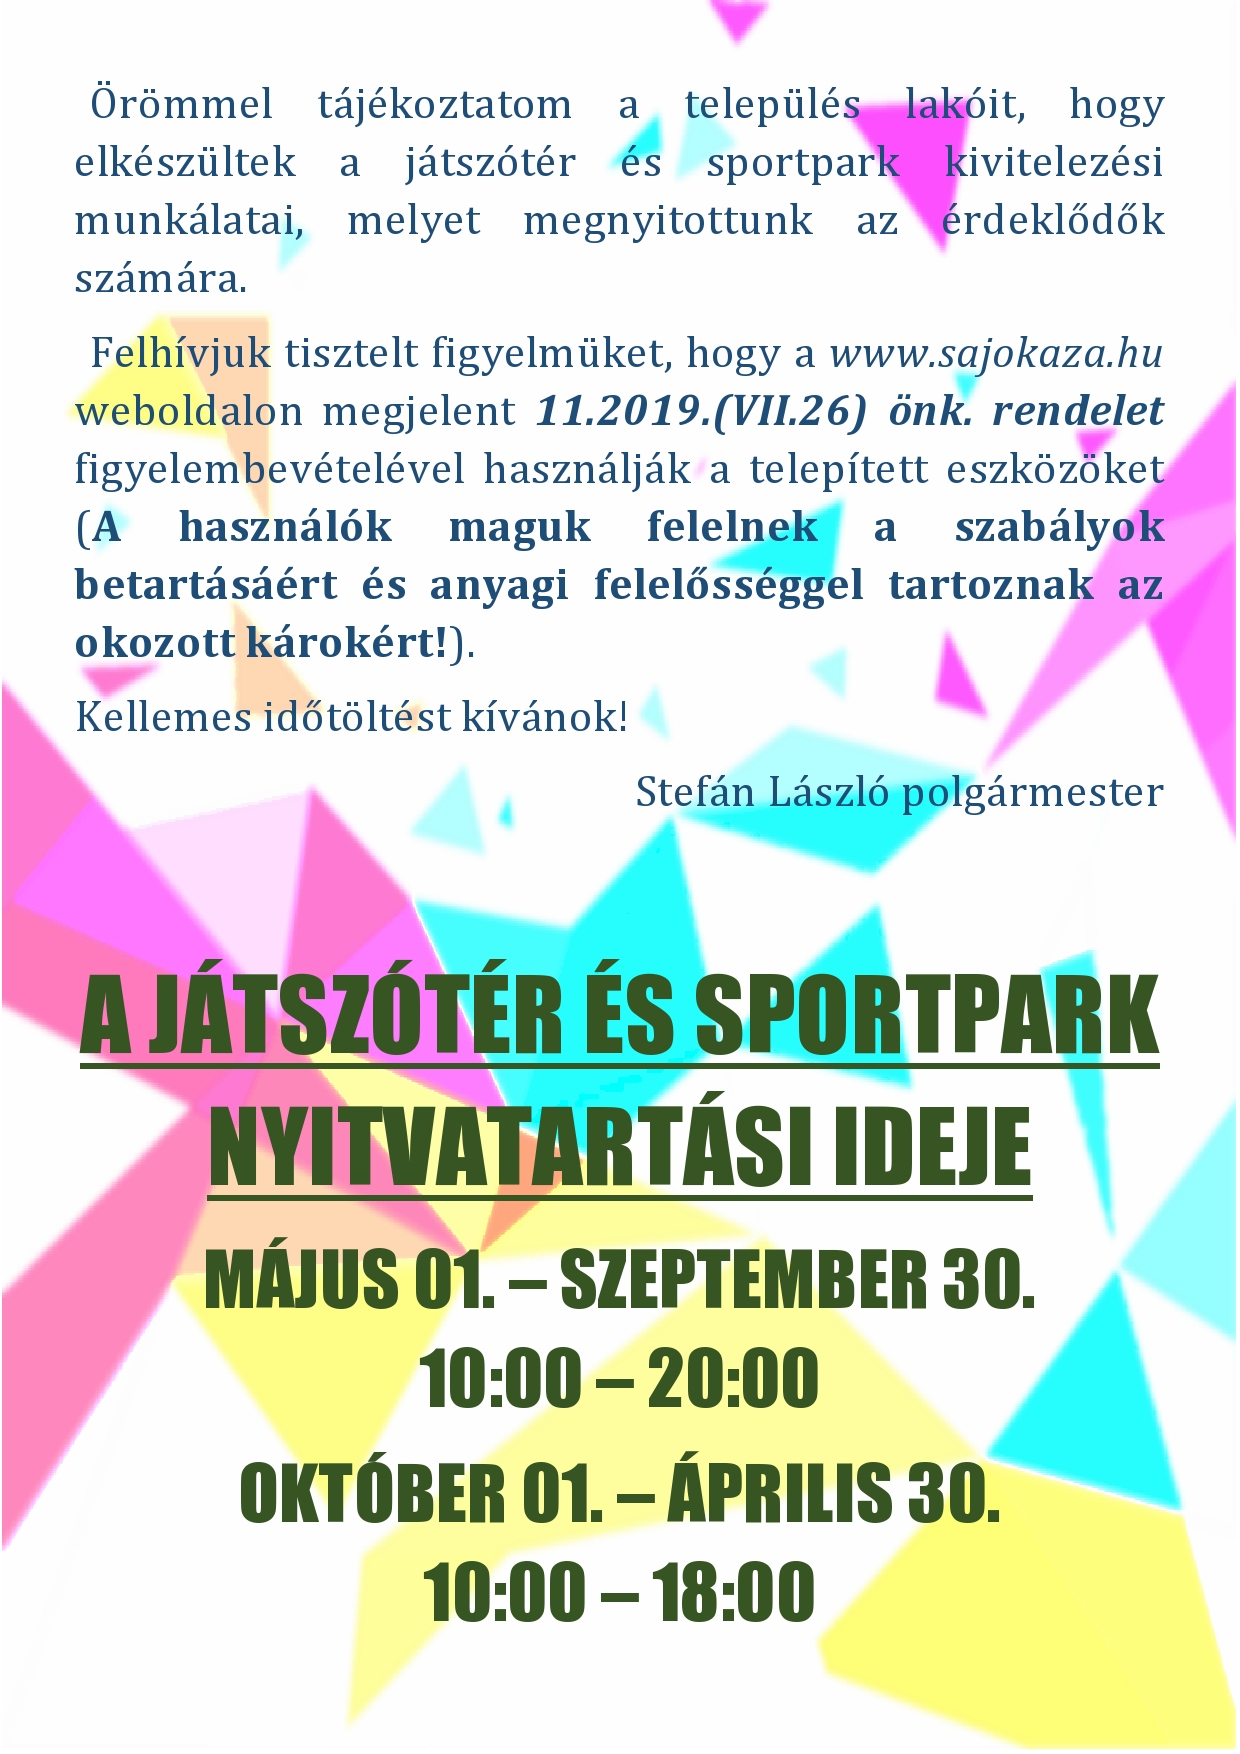 jatszoter_sportpark